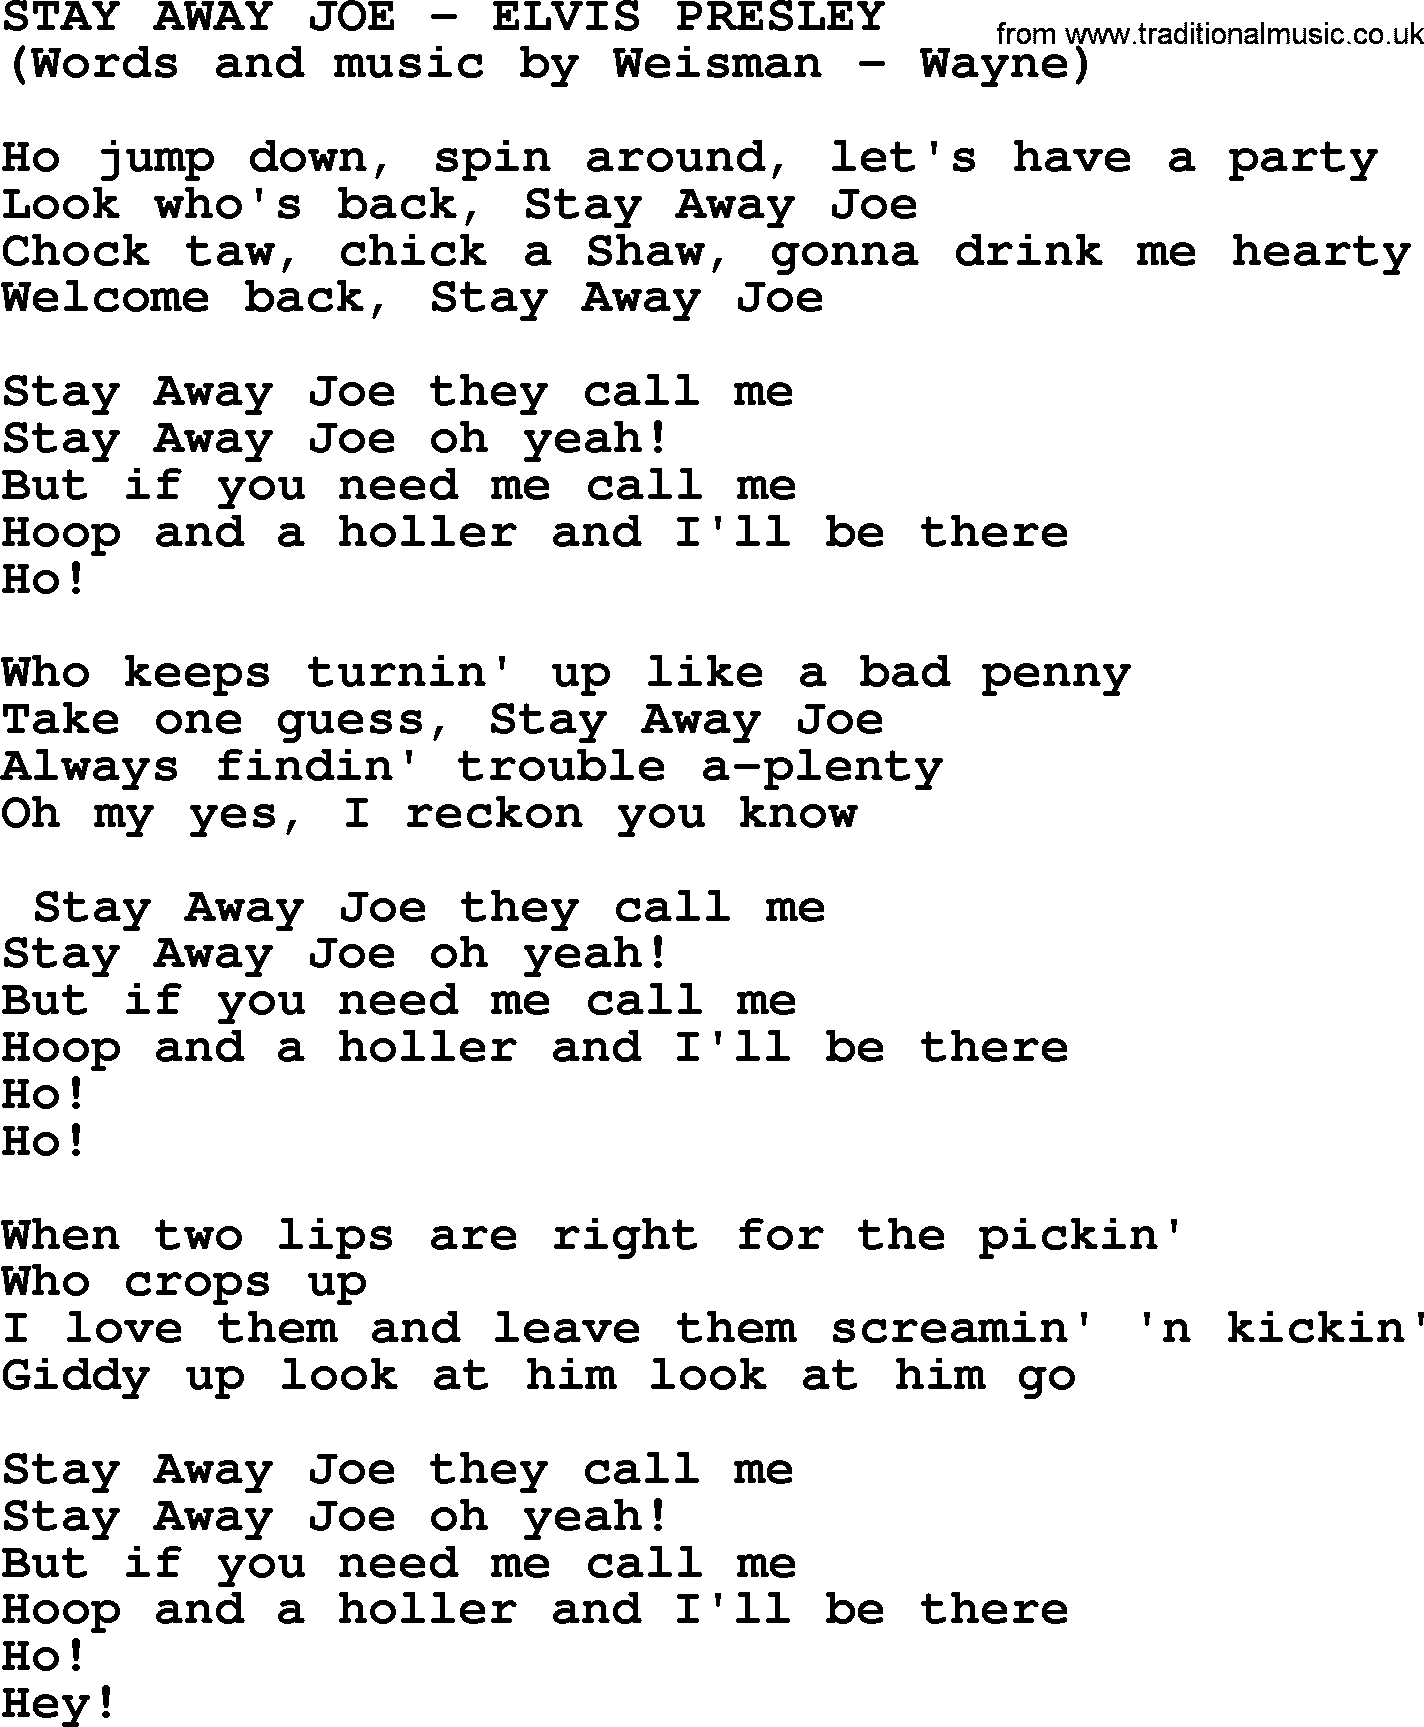 Elvis Presley song: Stay Away Joe lyrics